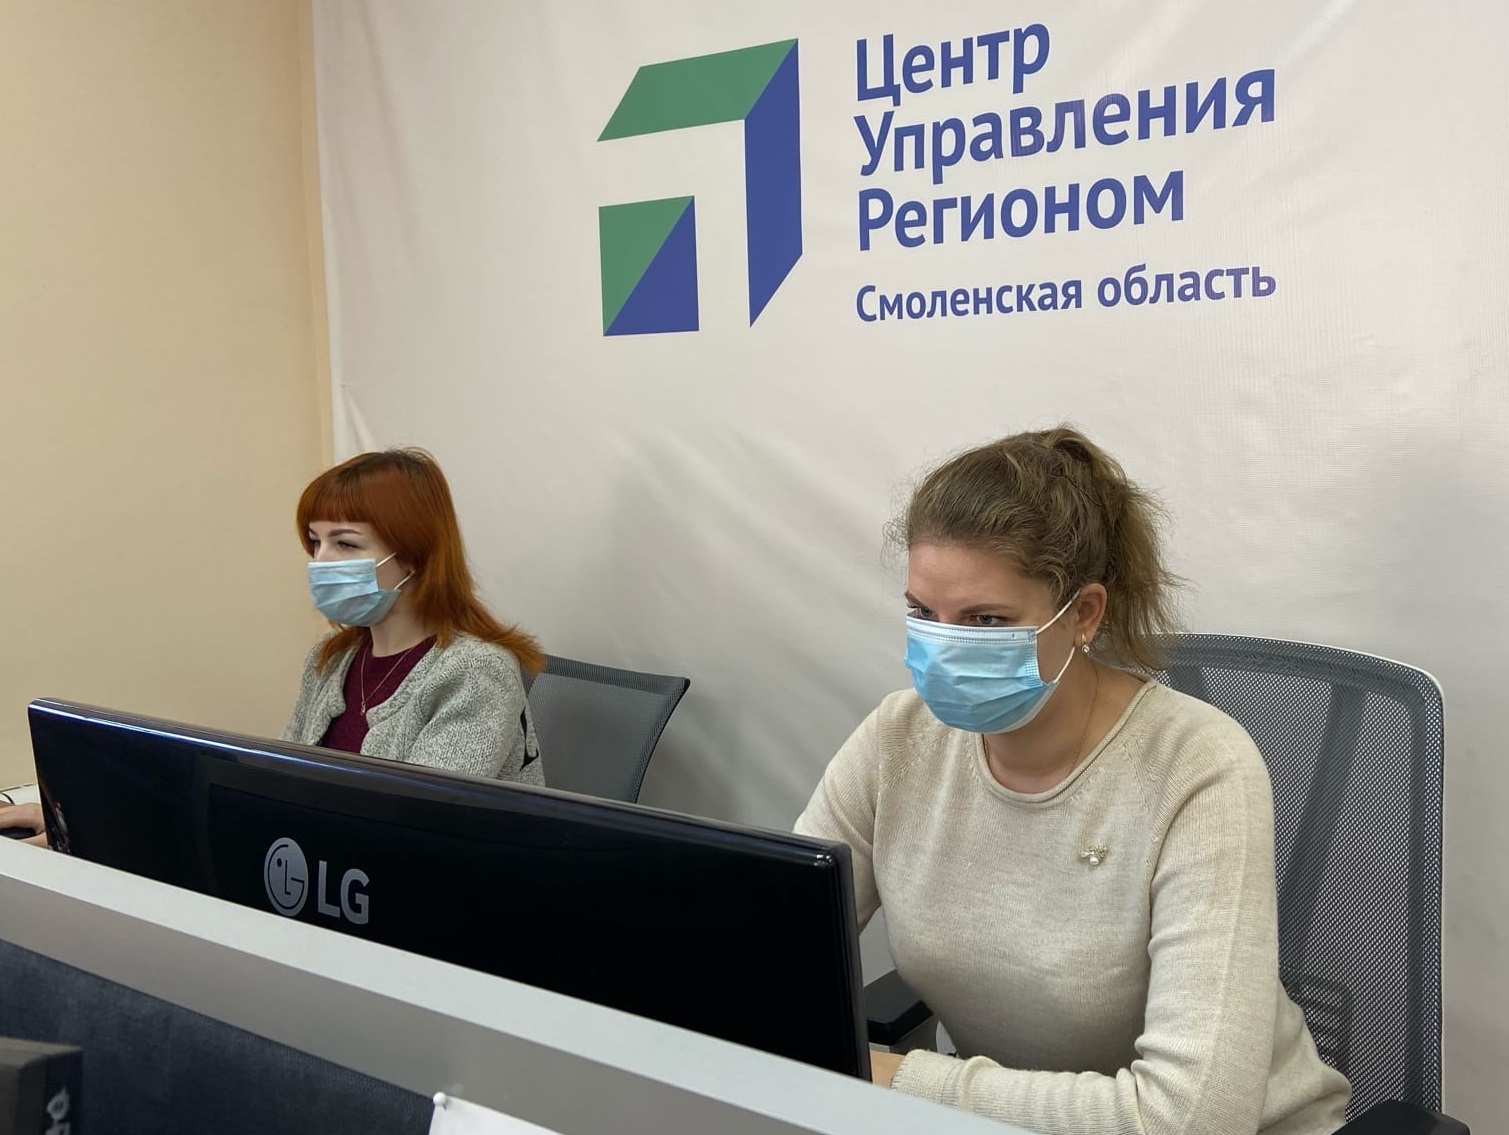 982 сообщения поступило в ЦУР Смоленской области за минувшую неделю